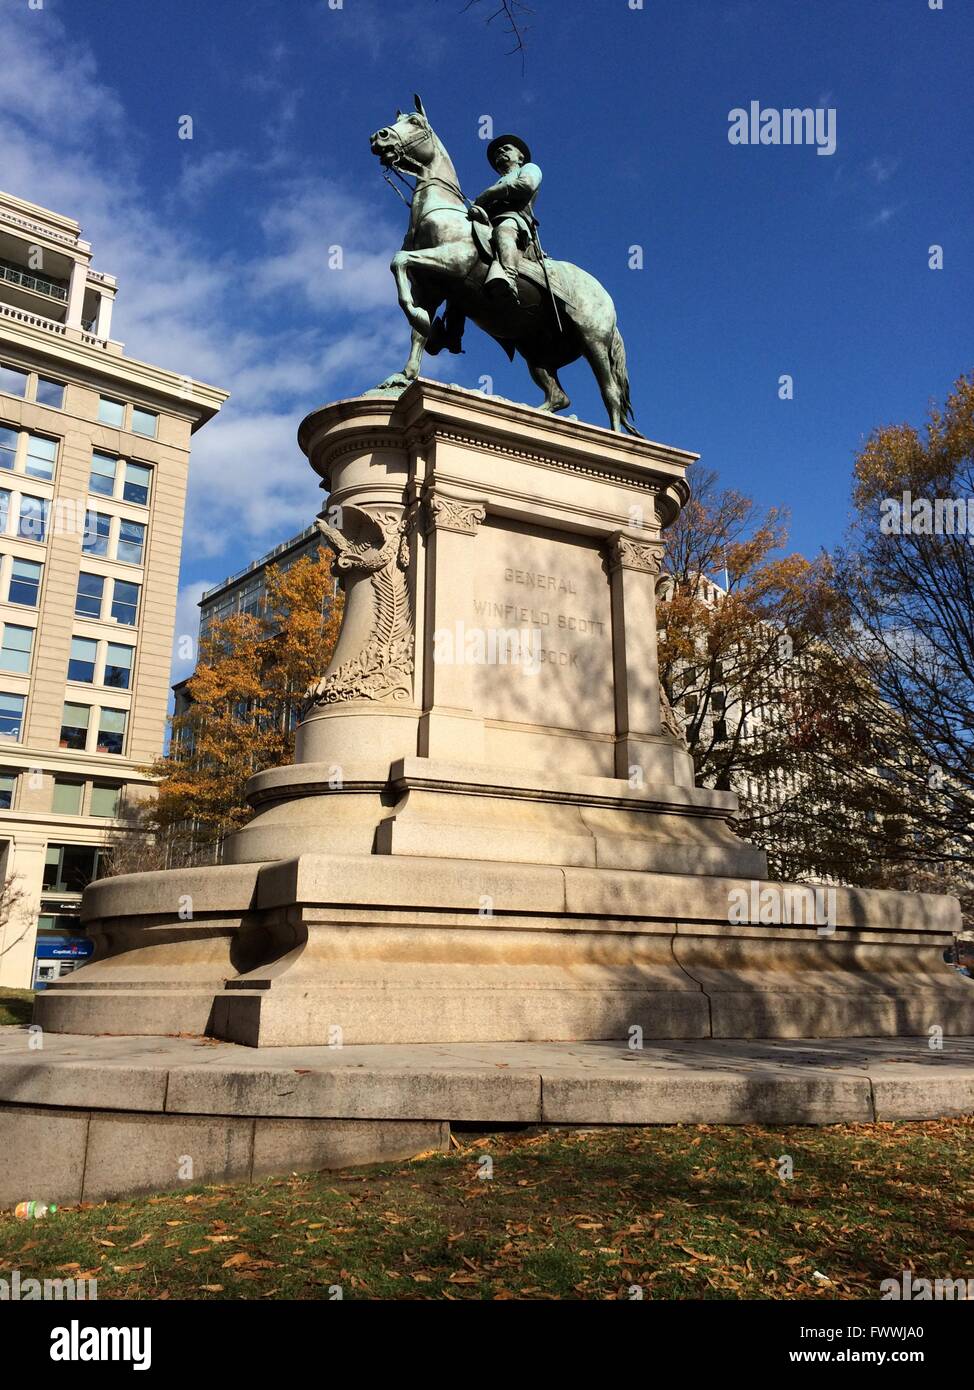 Washington, D.C., USA.  Denkmal für General Winfield Scott Hancock, Bürgerkrieg Held, demokratischer Kandidat für das Präsidentenamt im Jahr 1880. Stockfoto